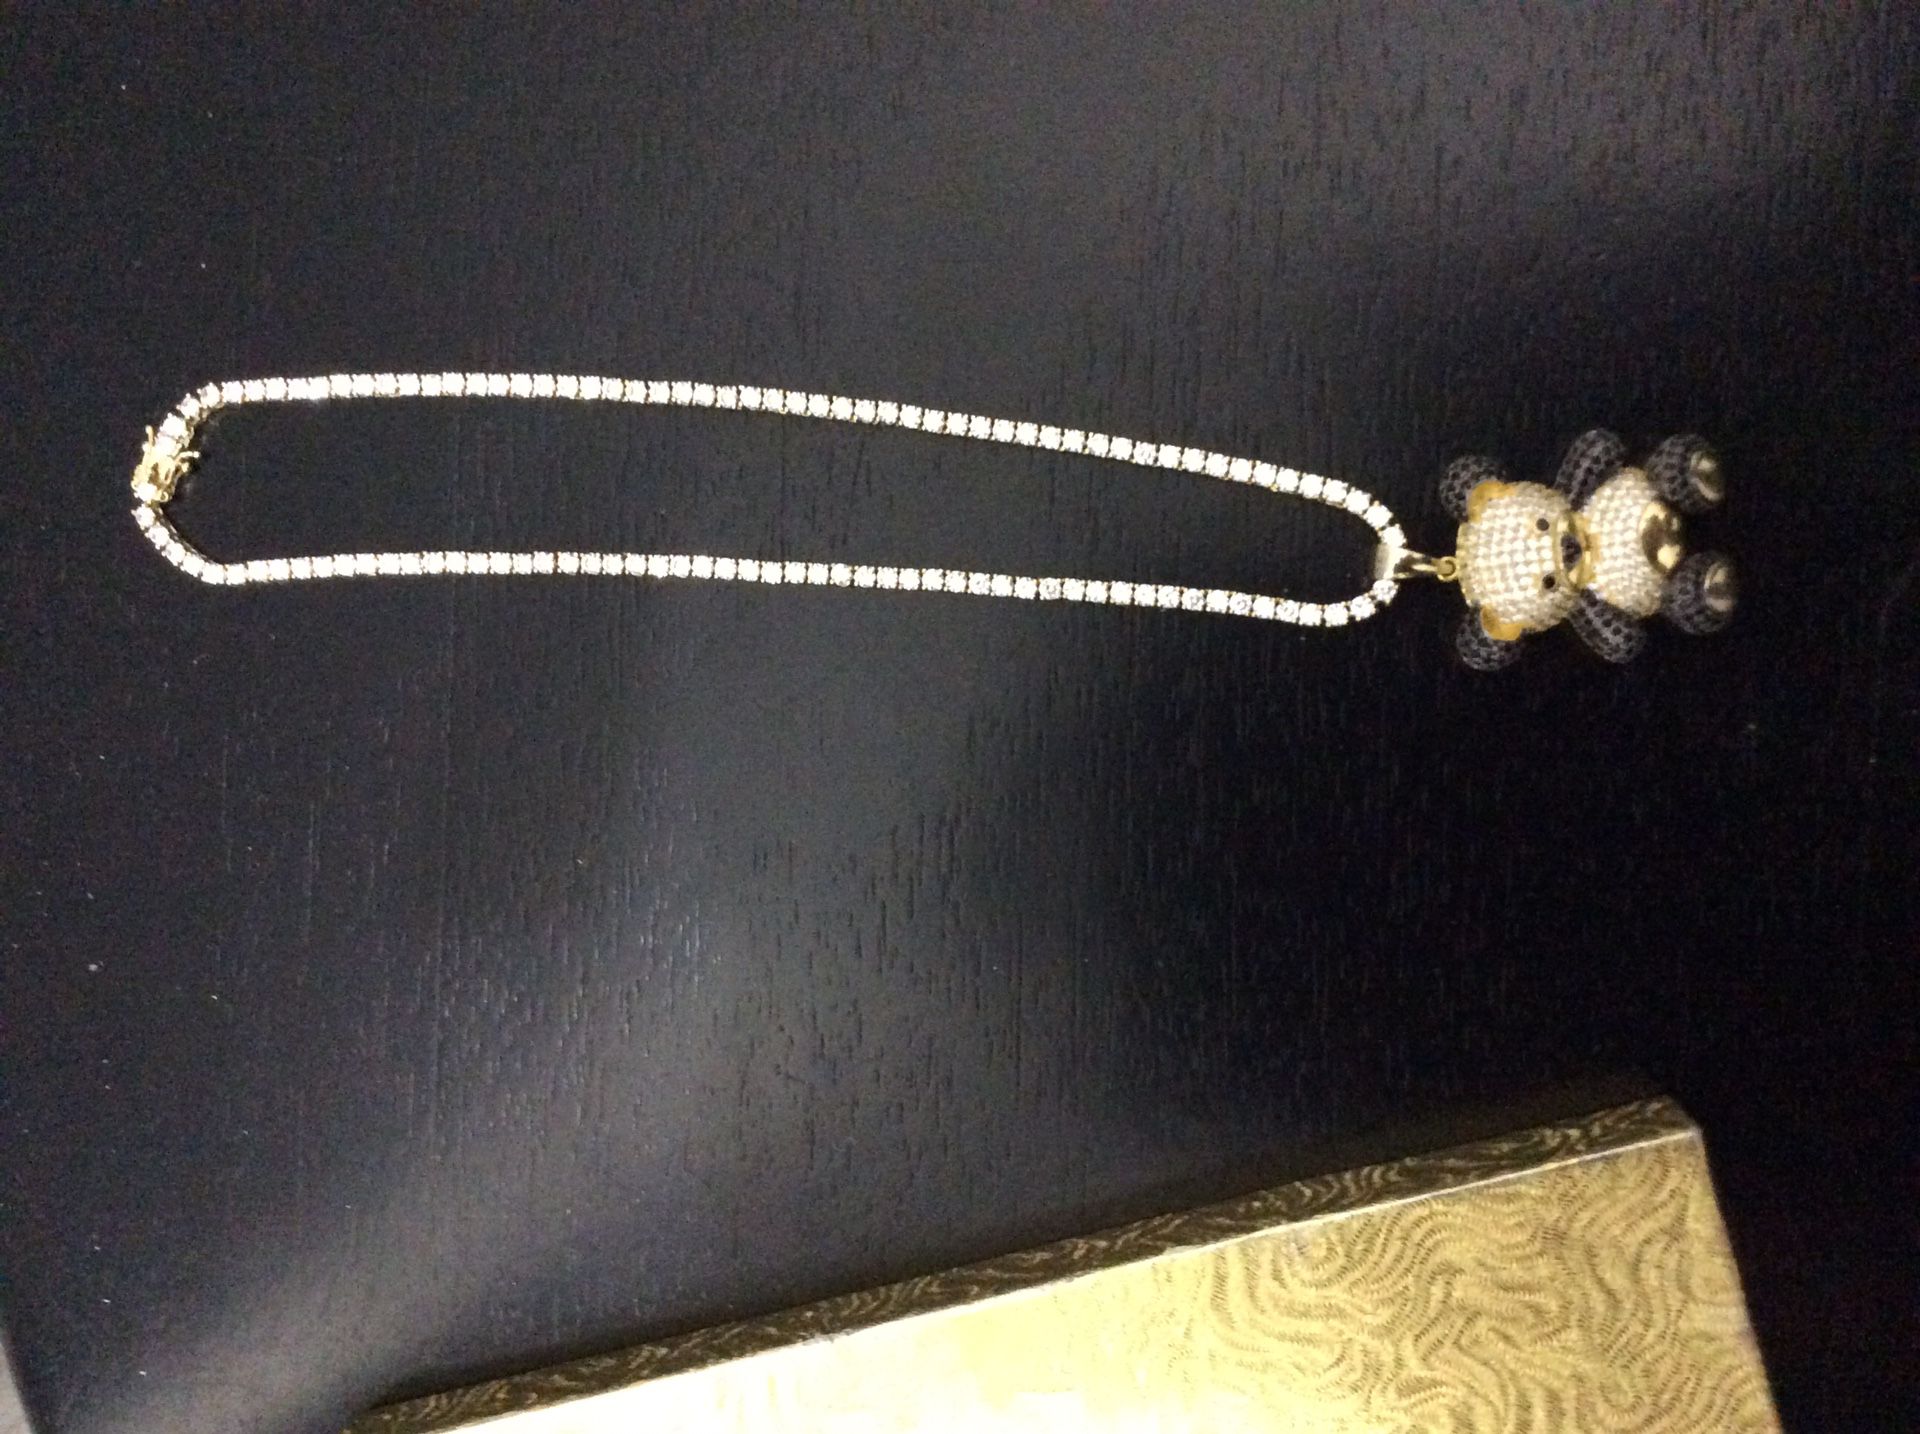 Diamond chain with diamond teddy bear pendant